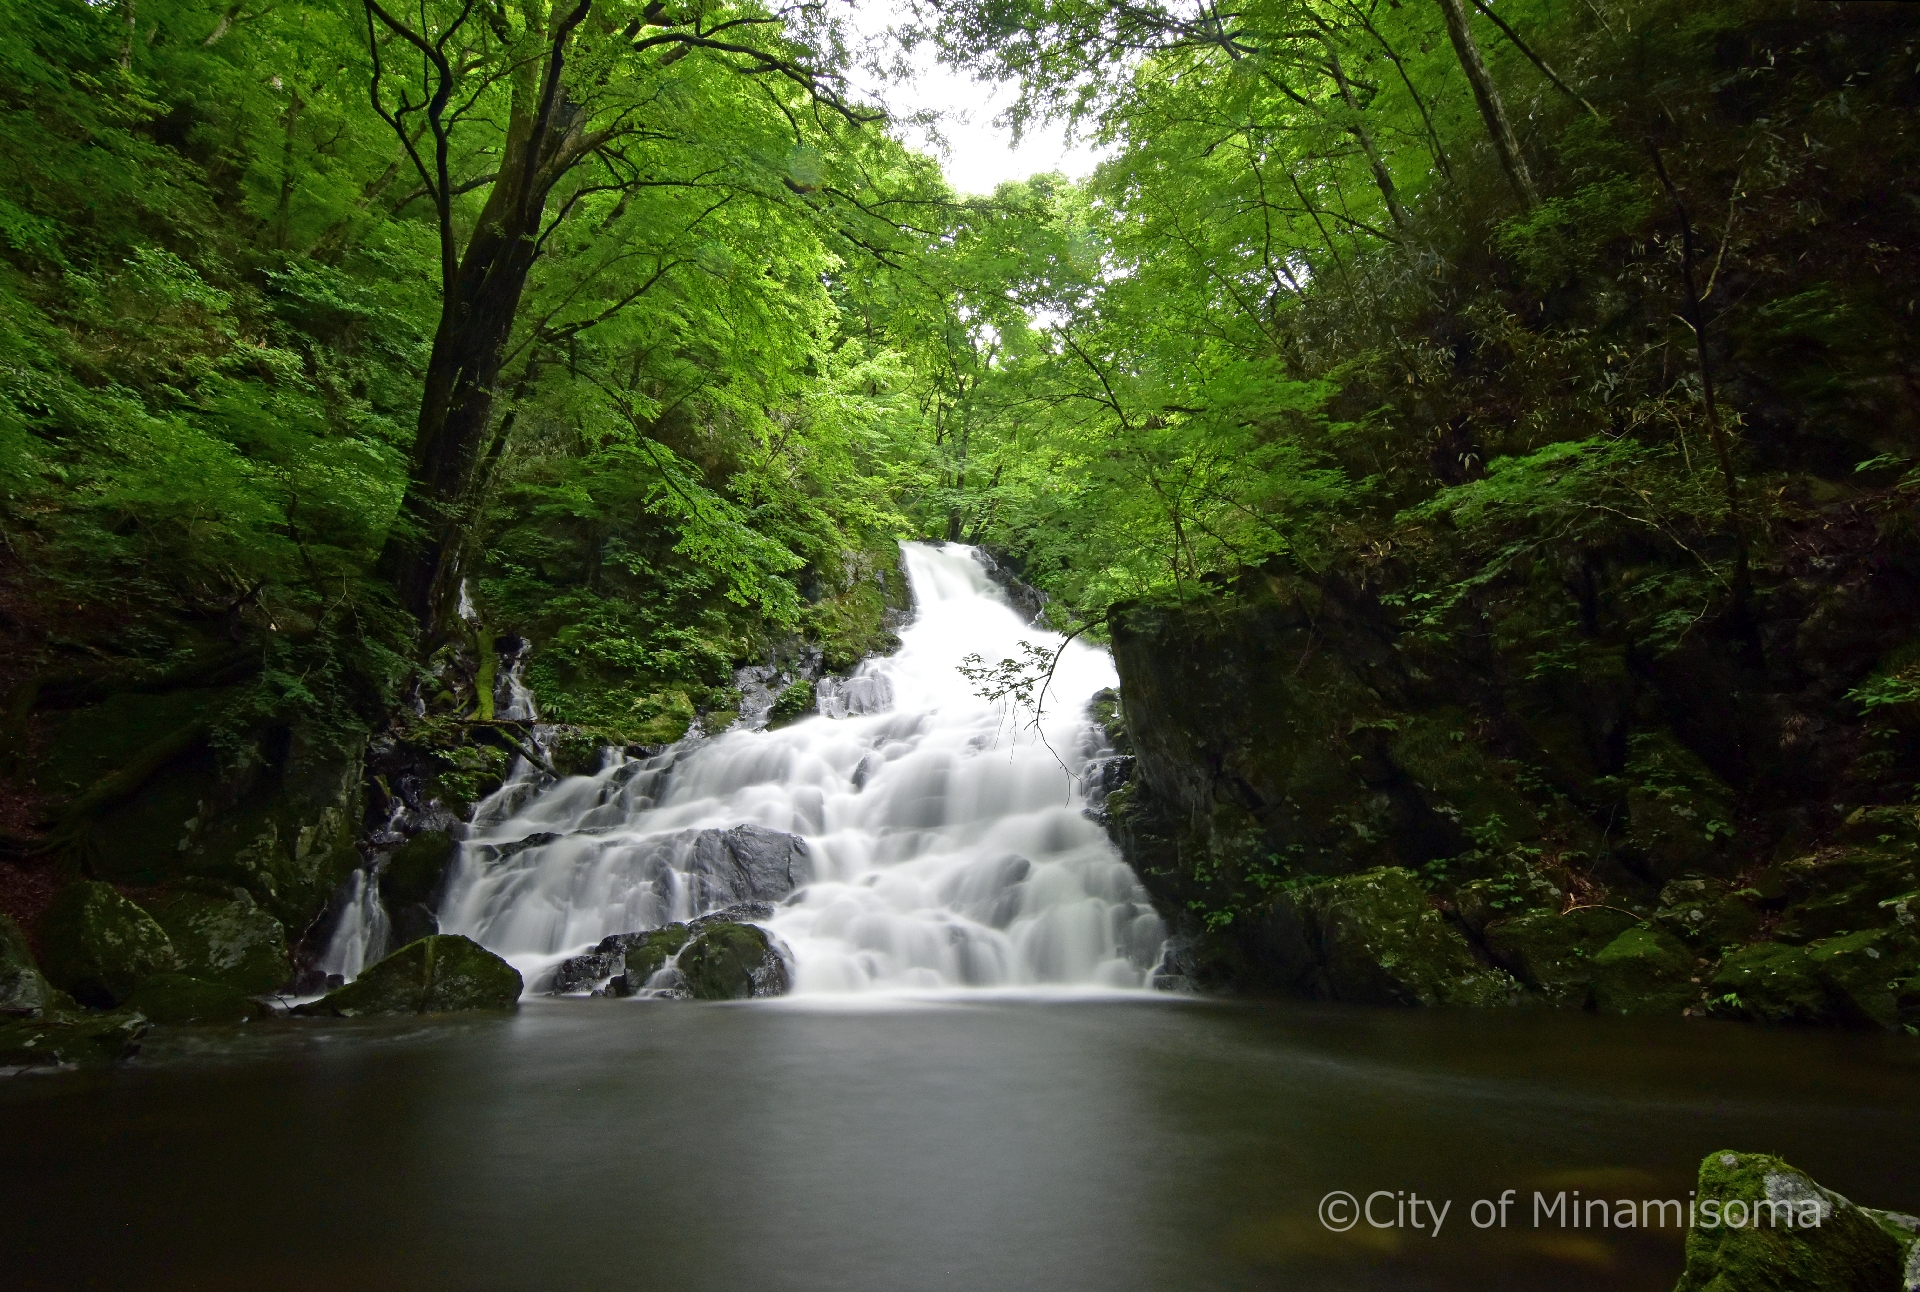 木々が茂る山中で、中央に広がる池に階段状の滝が流れ込む風景の写真